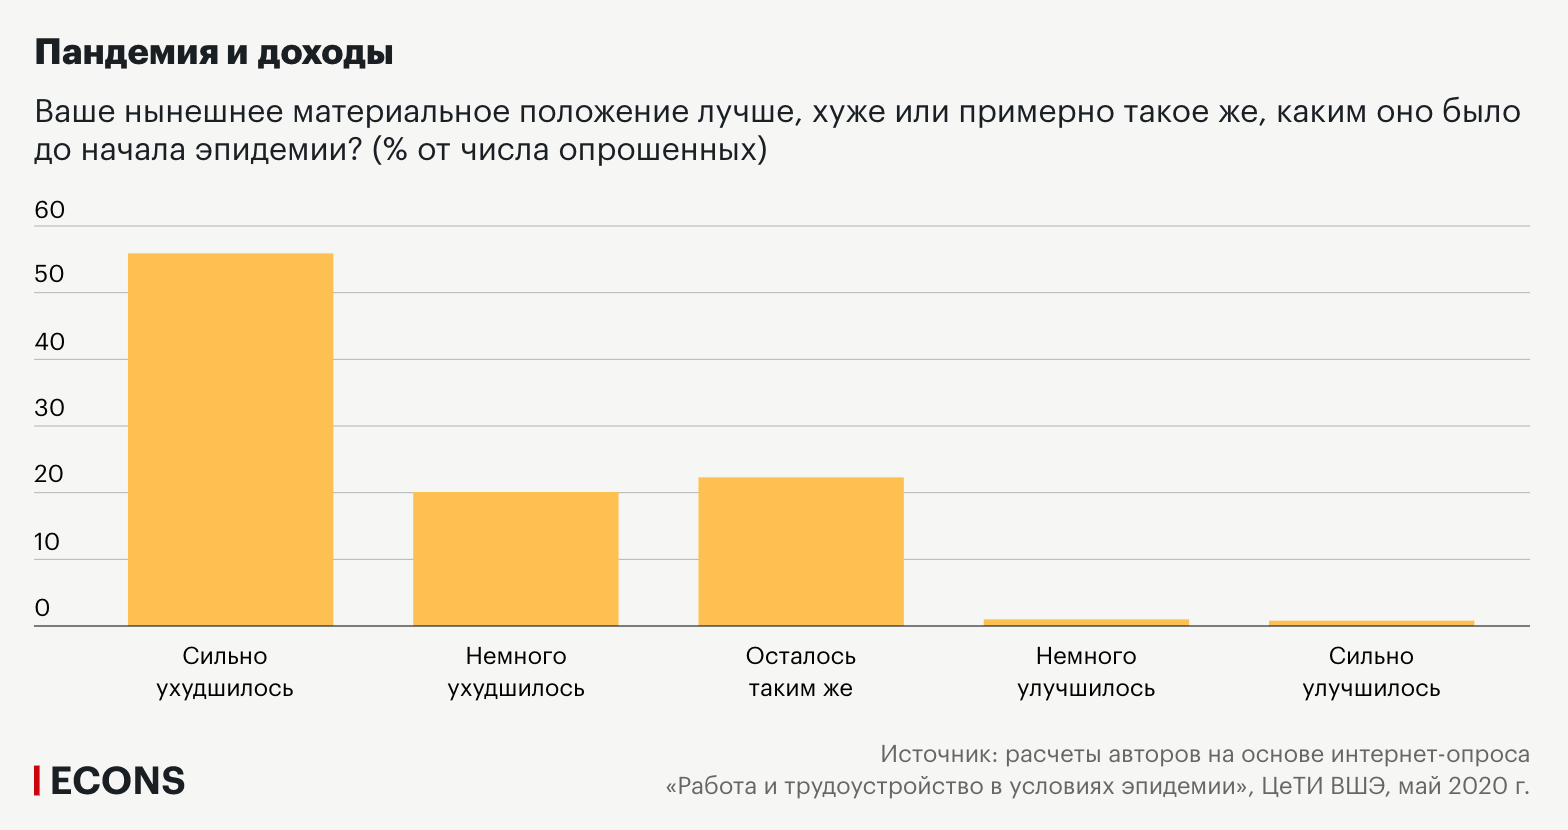 Ставка на жильё: как пандемия коронавируса отразилась на российском рынке недвижимости